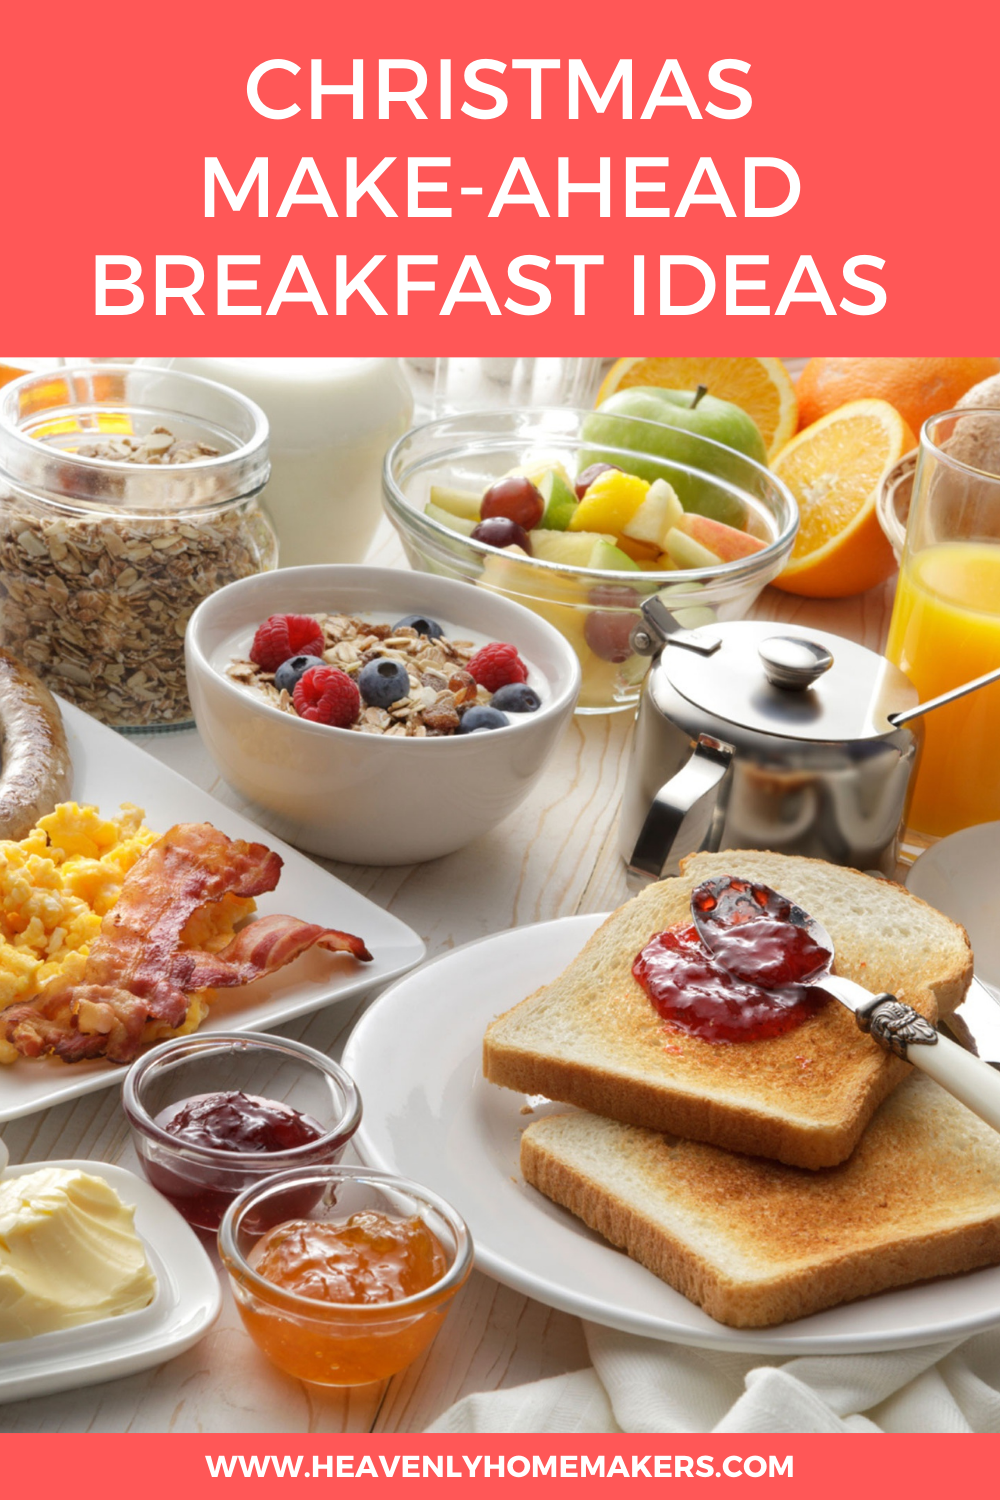 Christmas Make-Ahead Breakfast Ideas